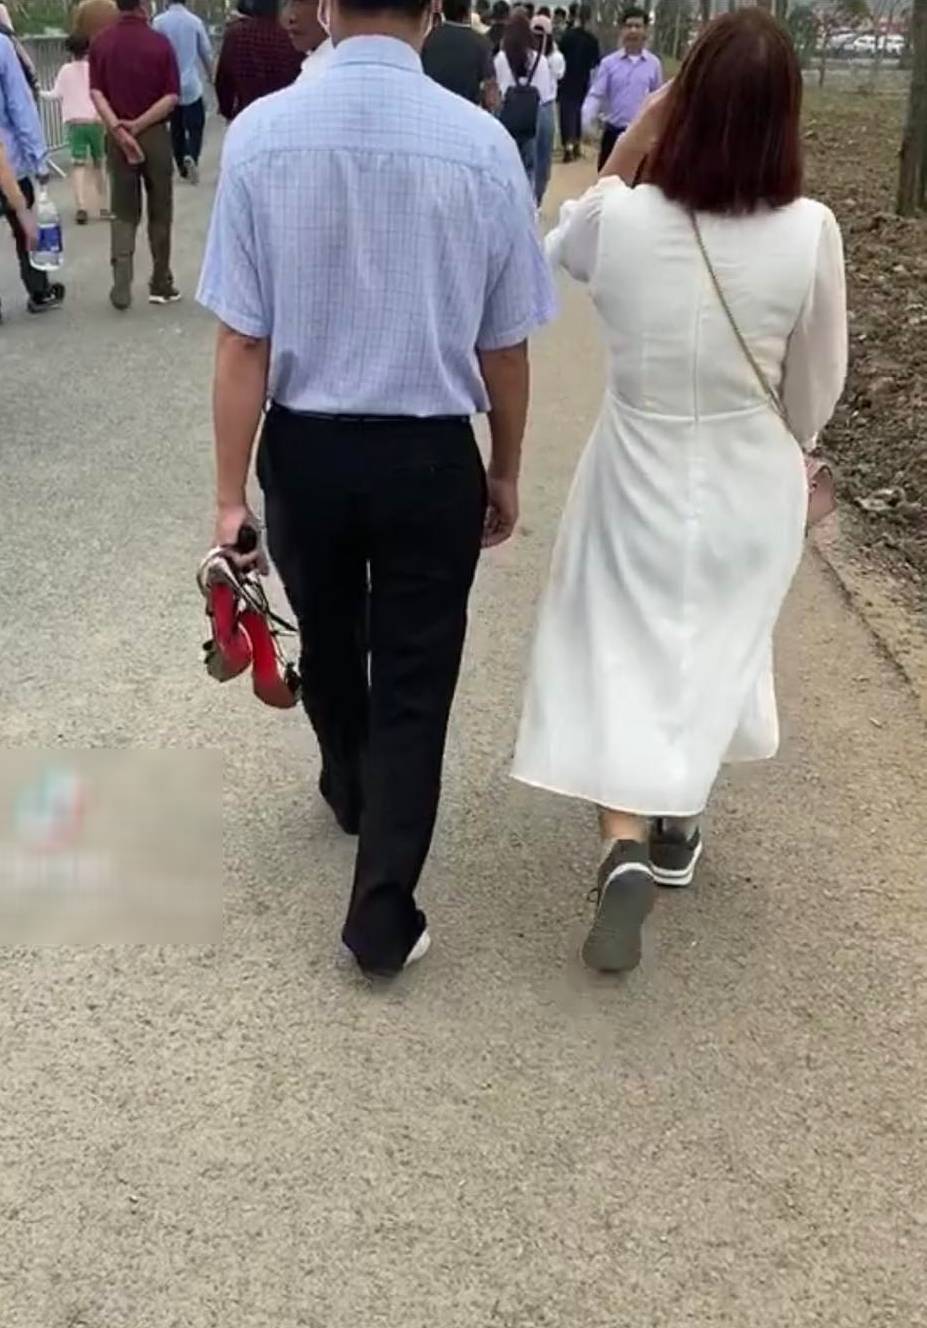  
Chồng chấp nhận đi chân trần nhường giày cho vợ (Ảnh cắt từ clip)